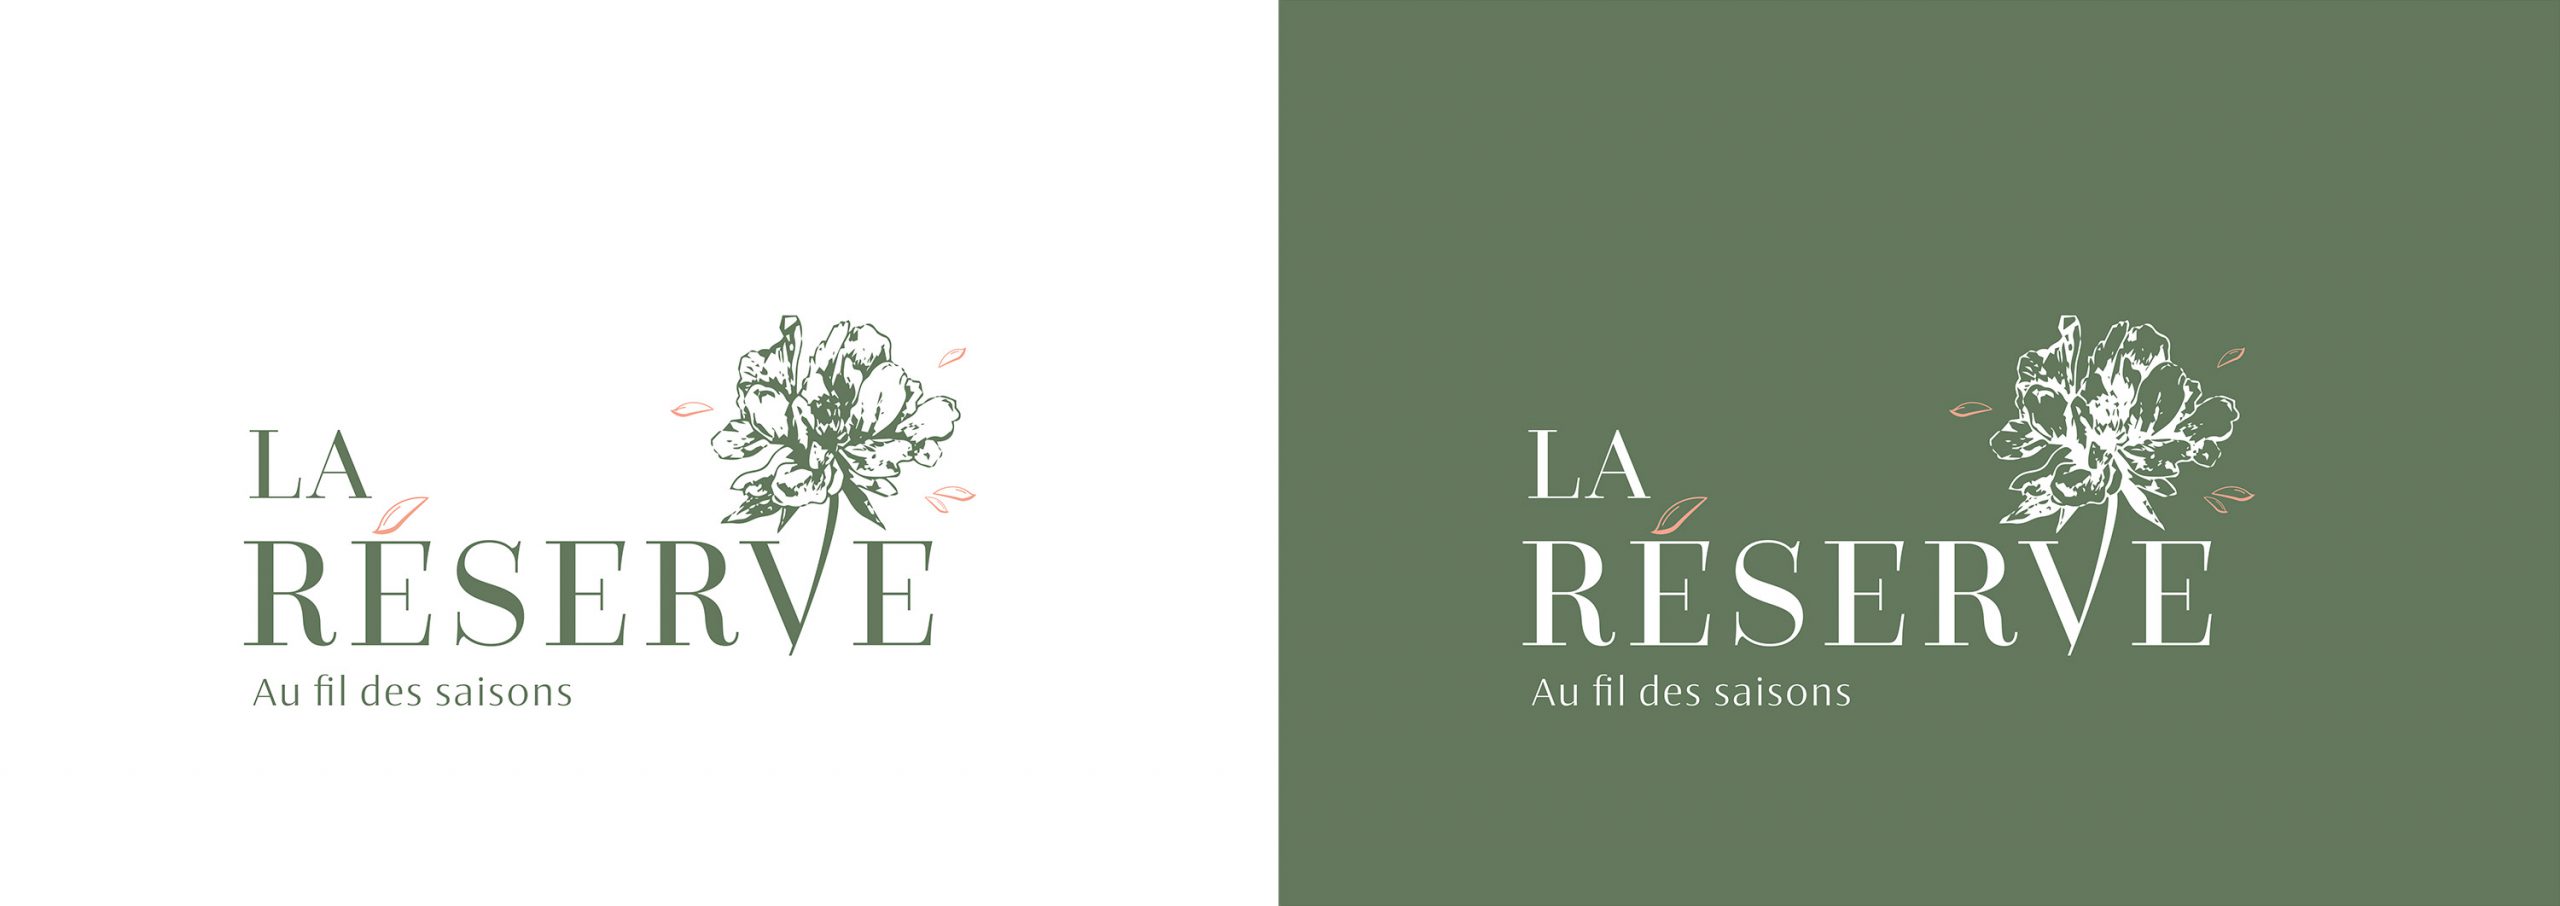 Arpub_Fleuriste_La Reserve_Fleurs_Logo